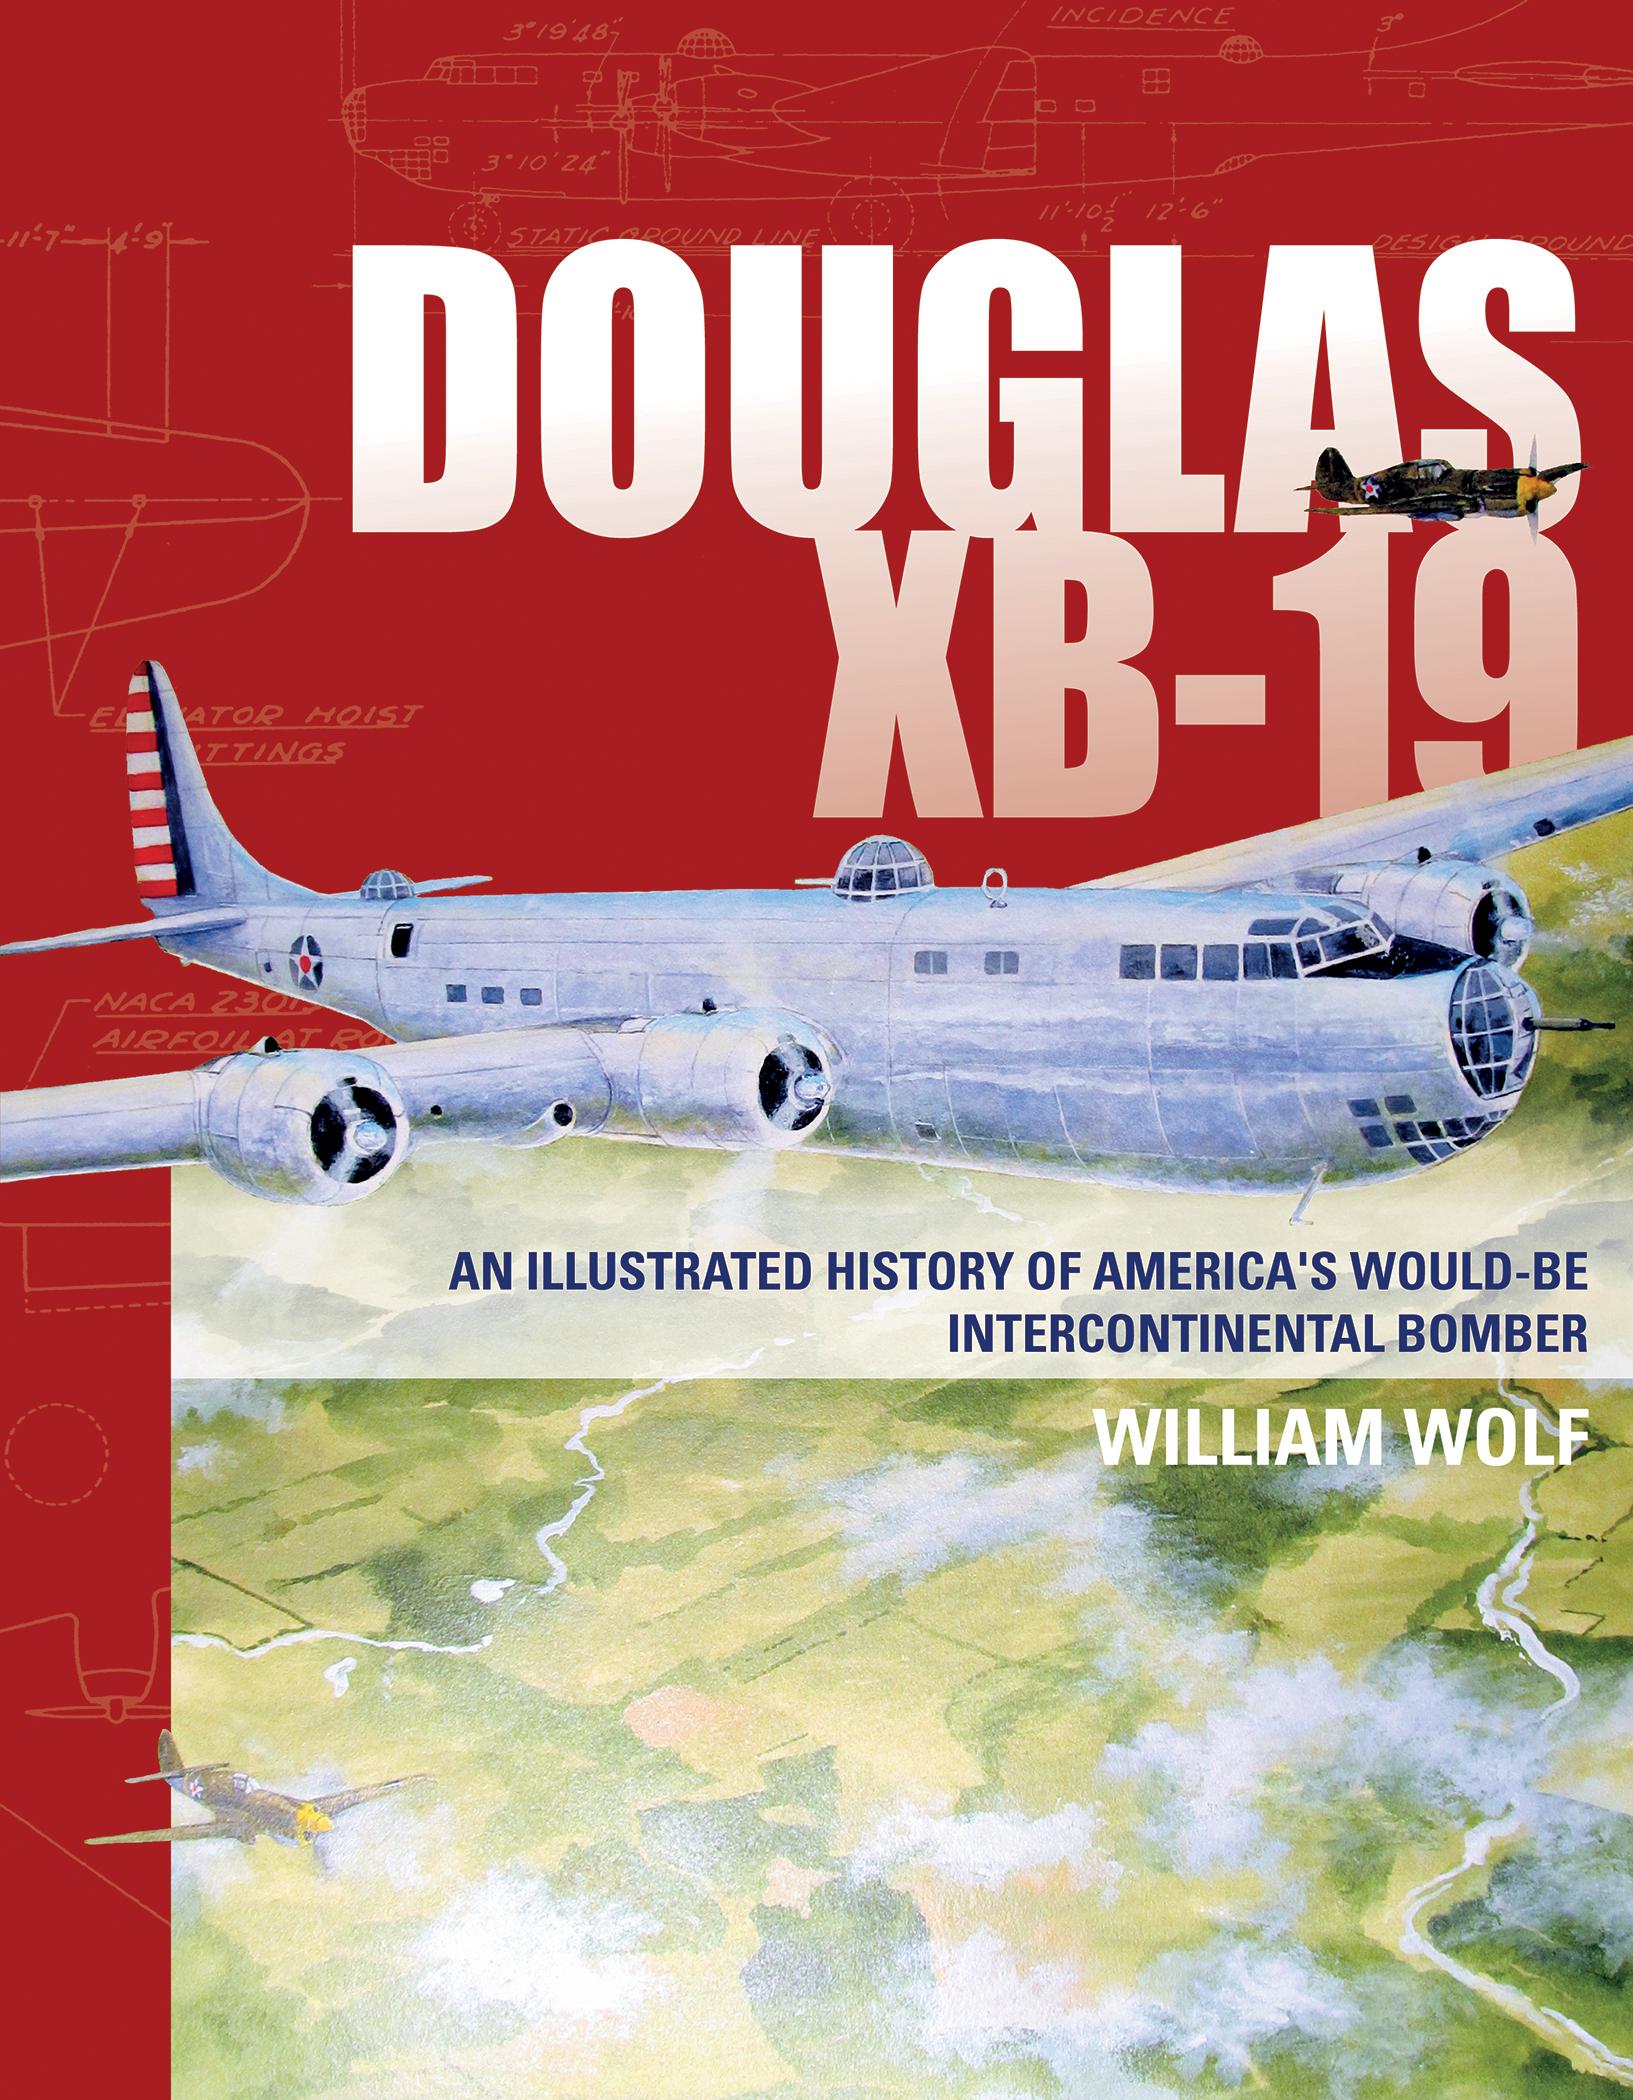 Douglas Xb-19 Wallpapers